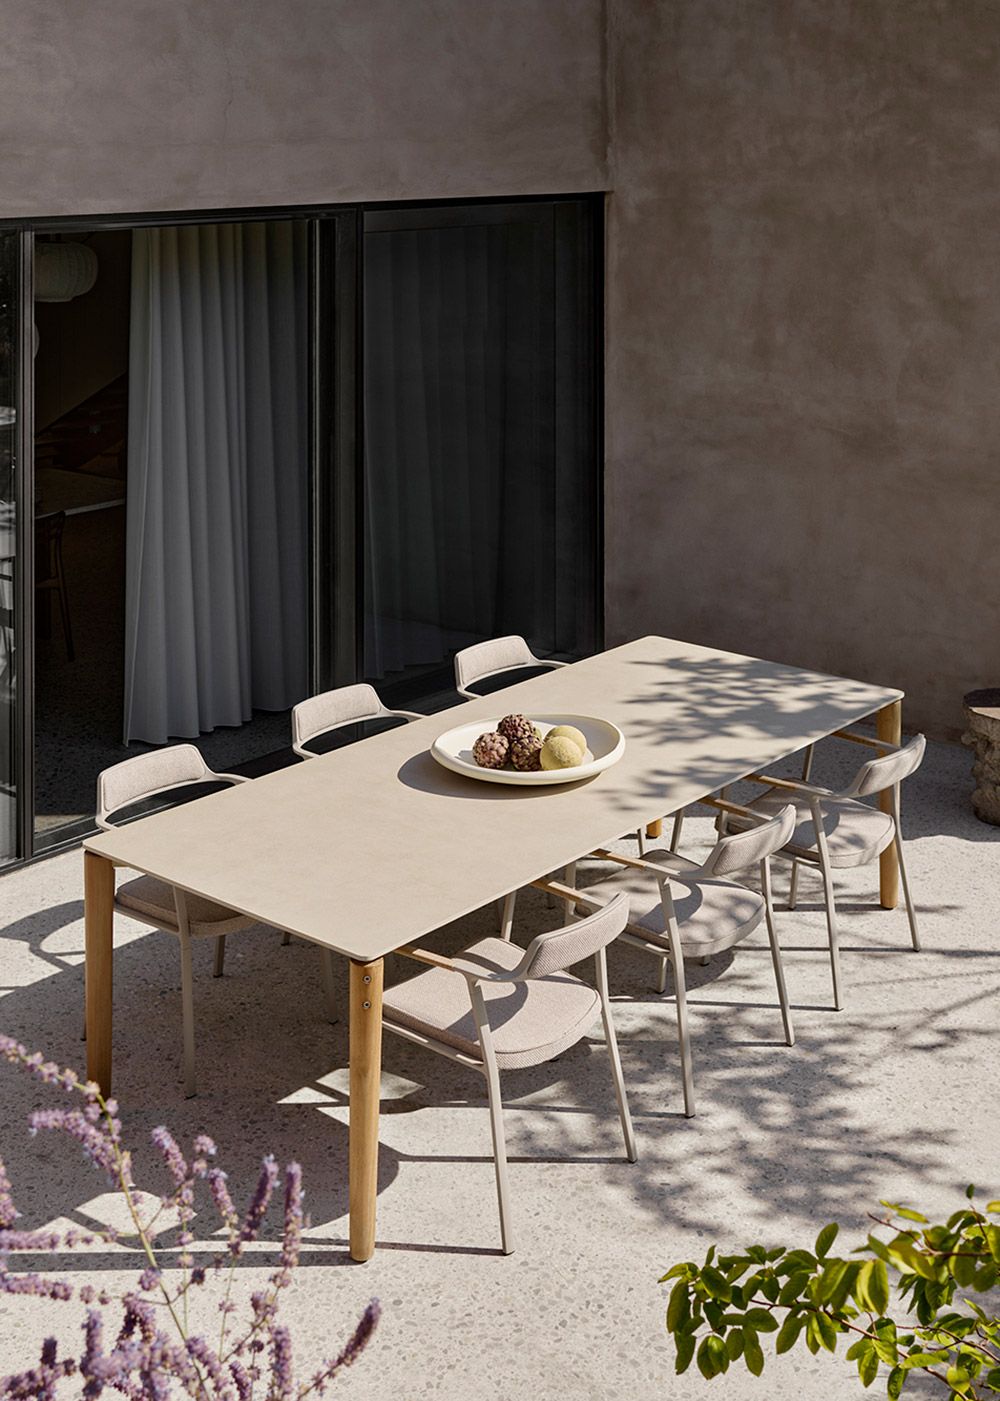 Vipp Open-Air havemøbler| Inspiration til indretning af terrassen